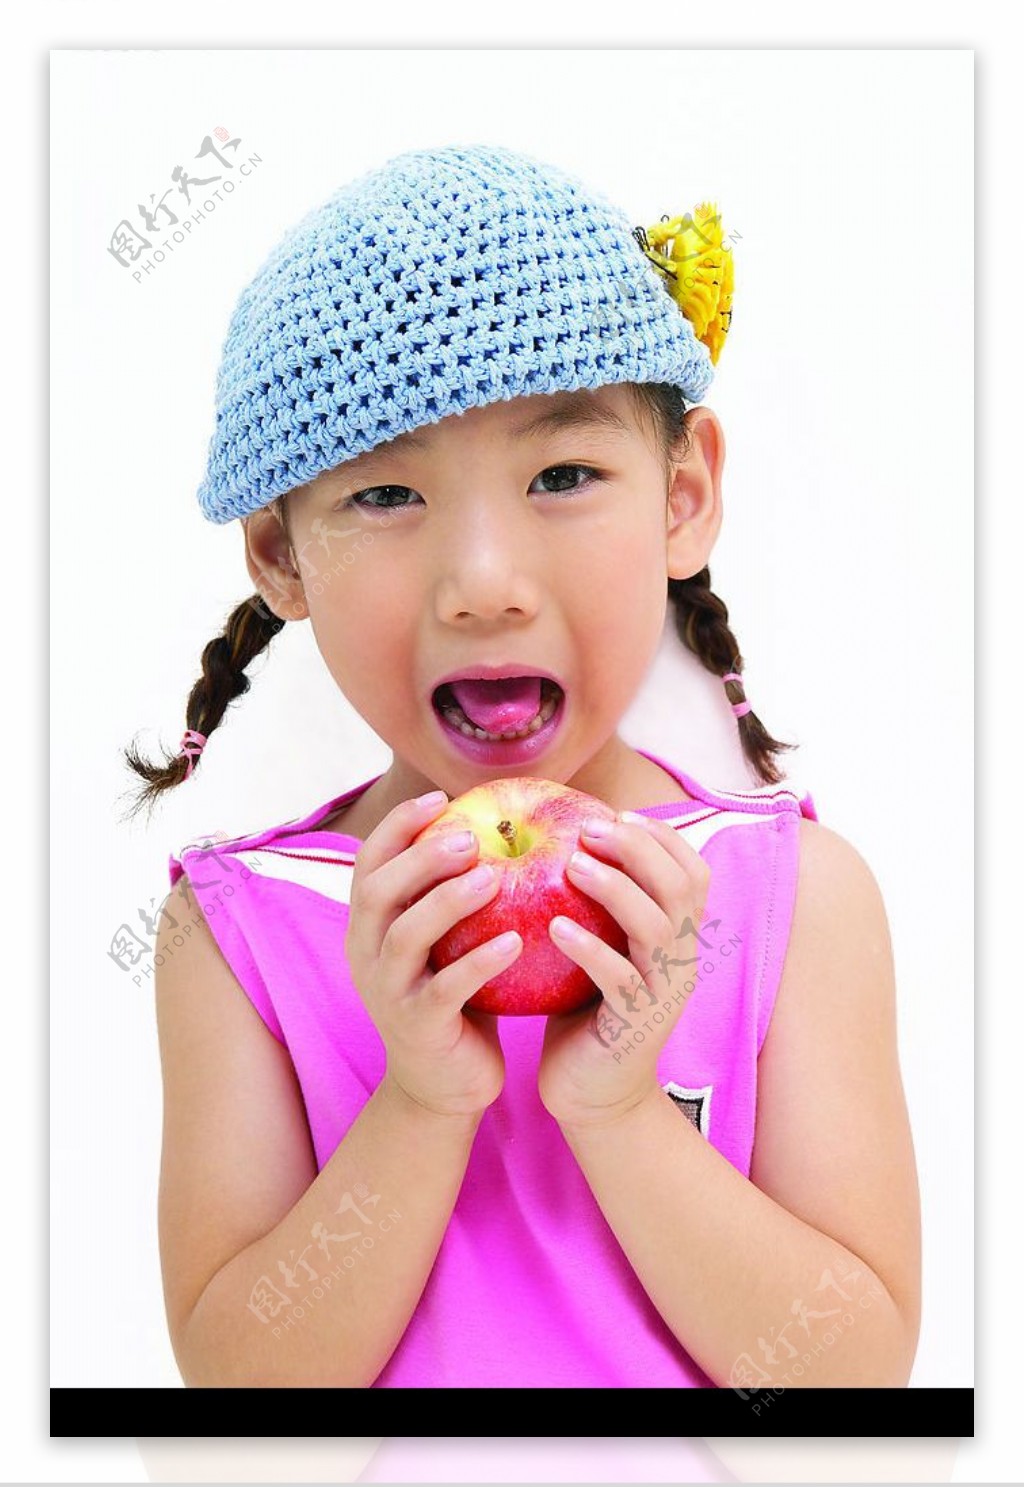 实用的掰苹果教程😋手把手教你如何掰苹果🍎-度小视